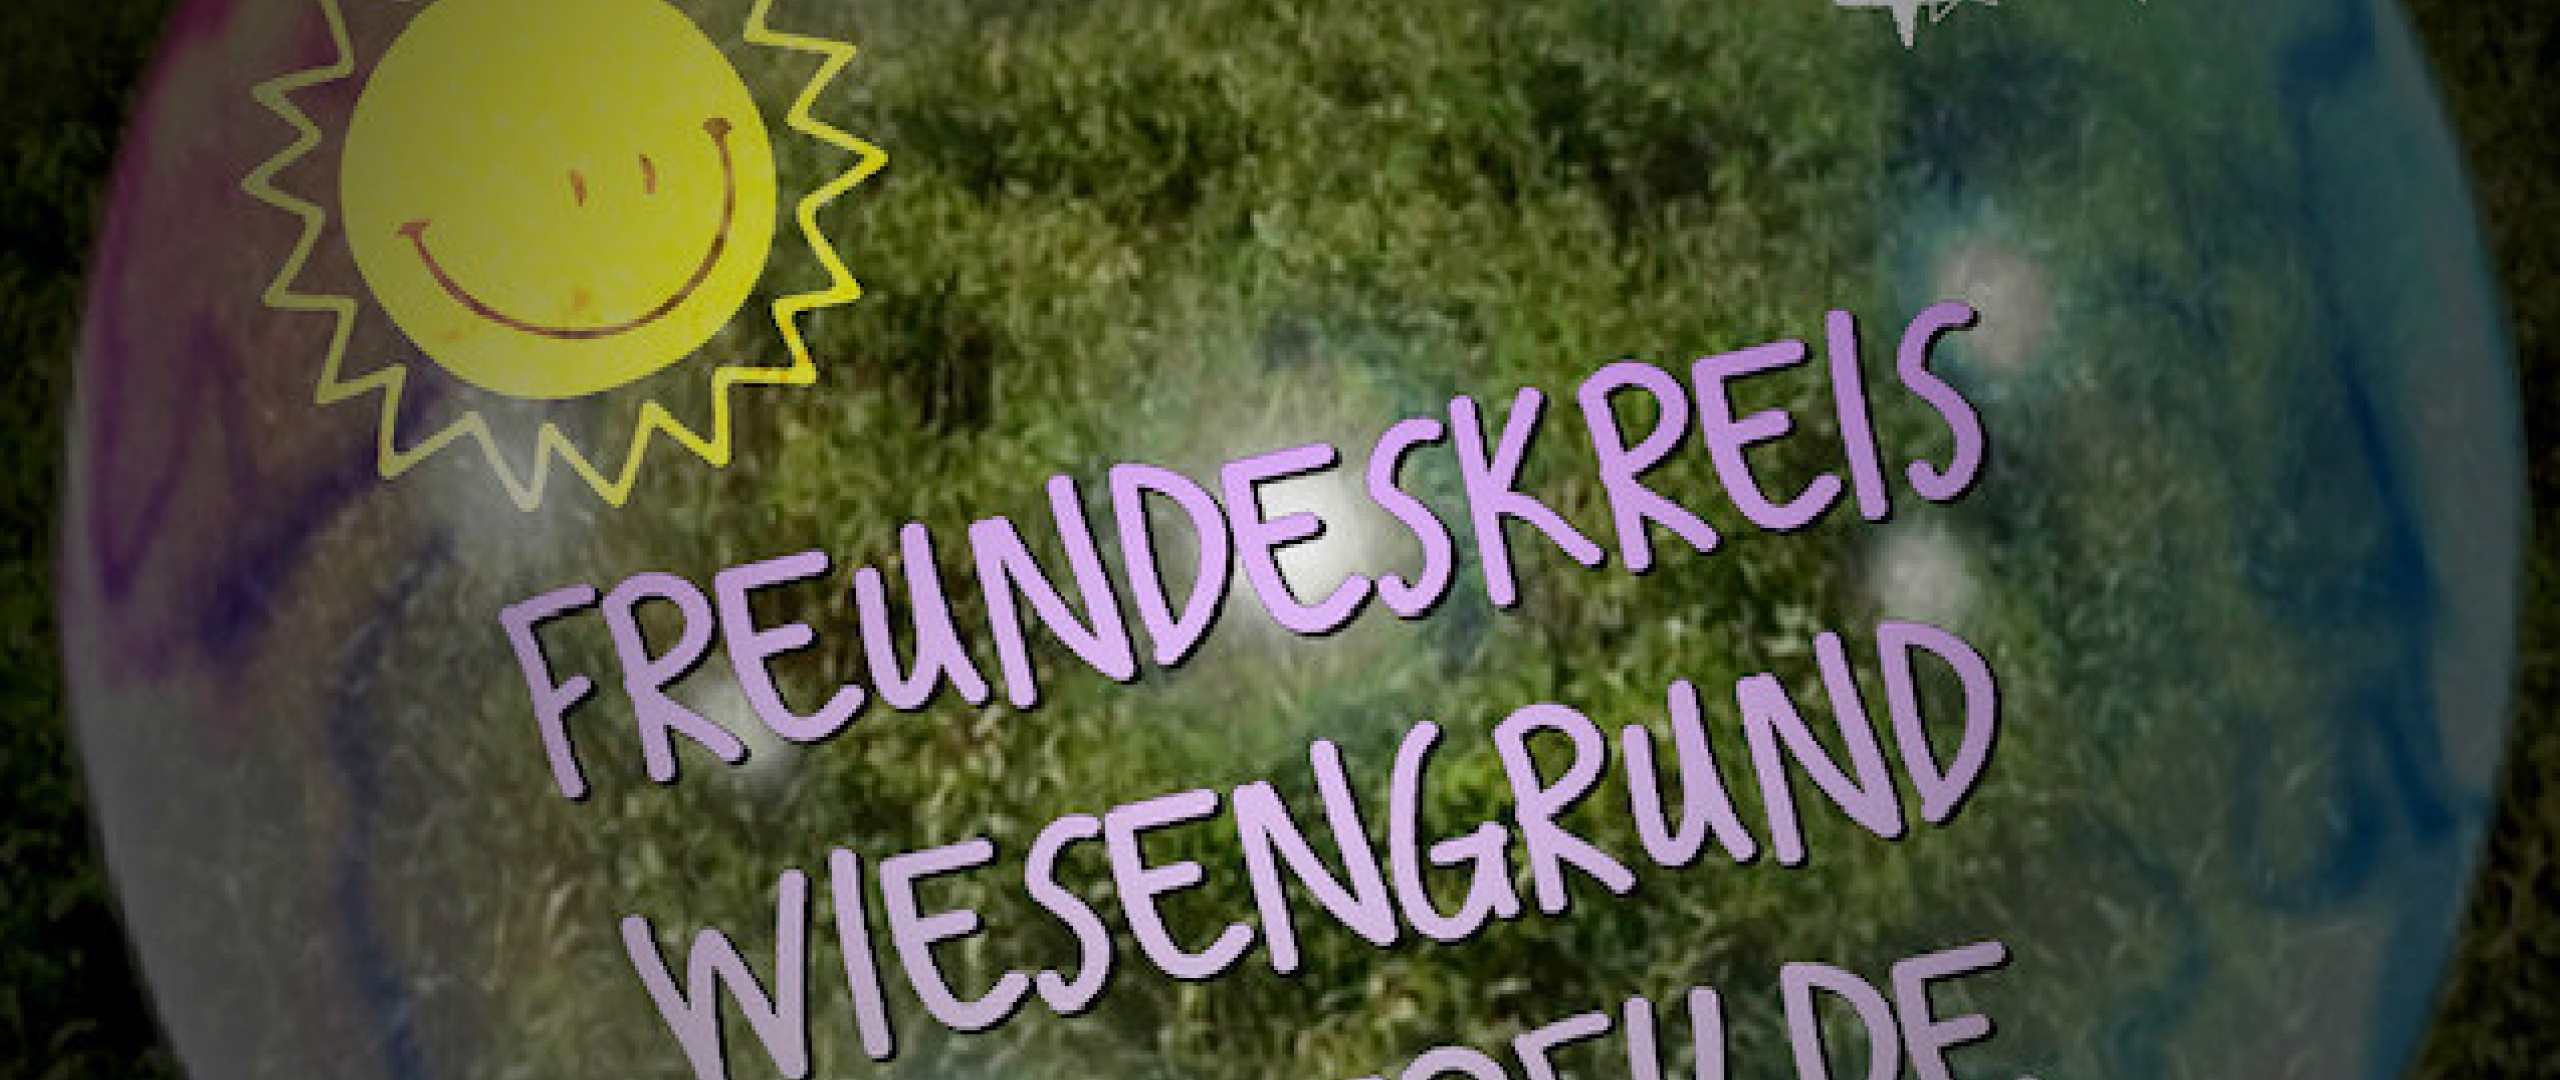 Logo Freundeskreis Wiesengrund - Westerfilde